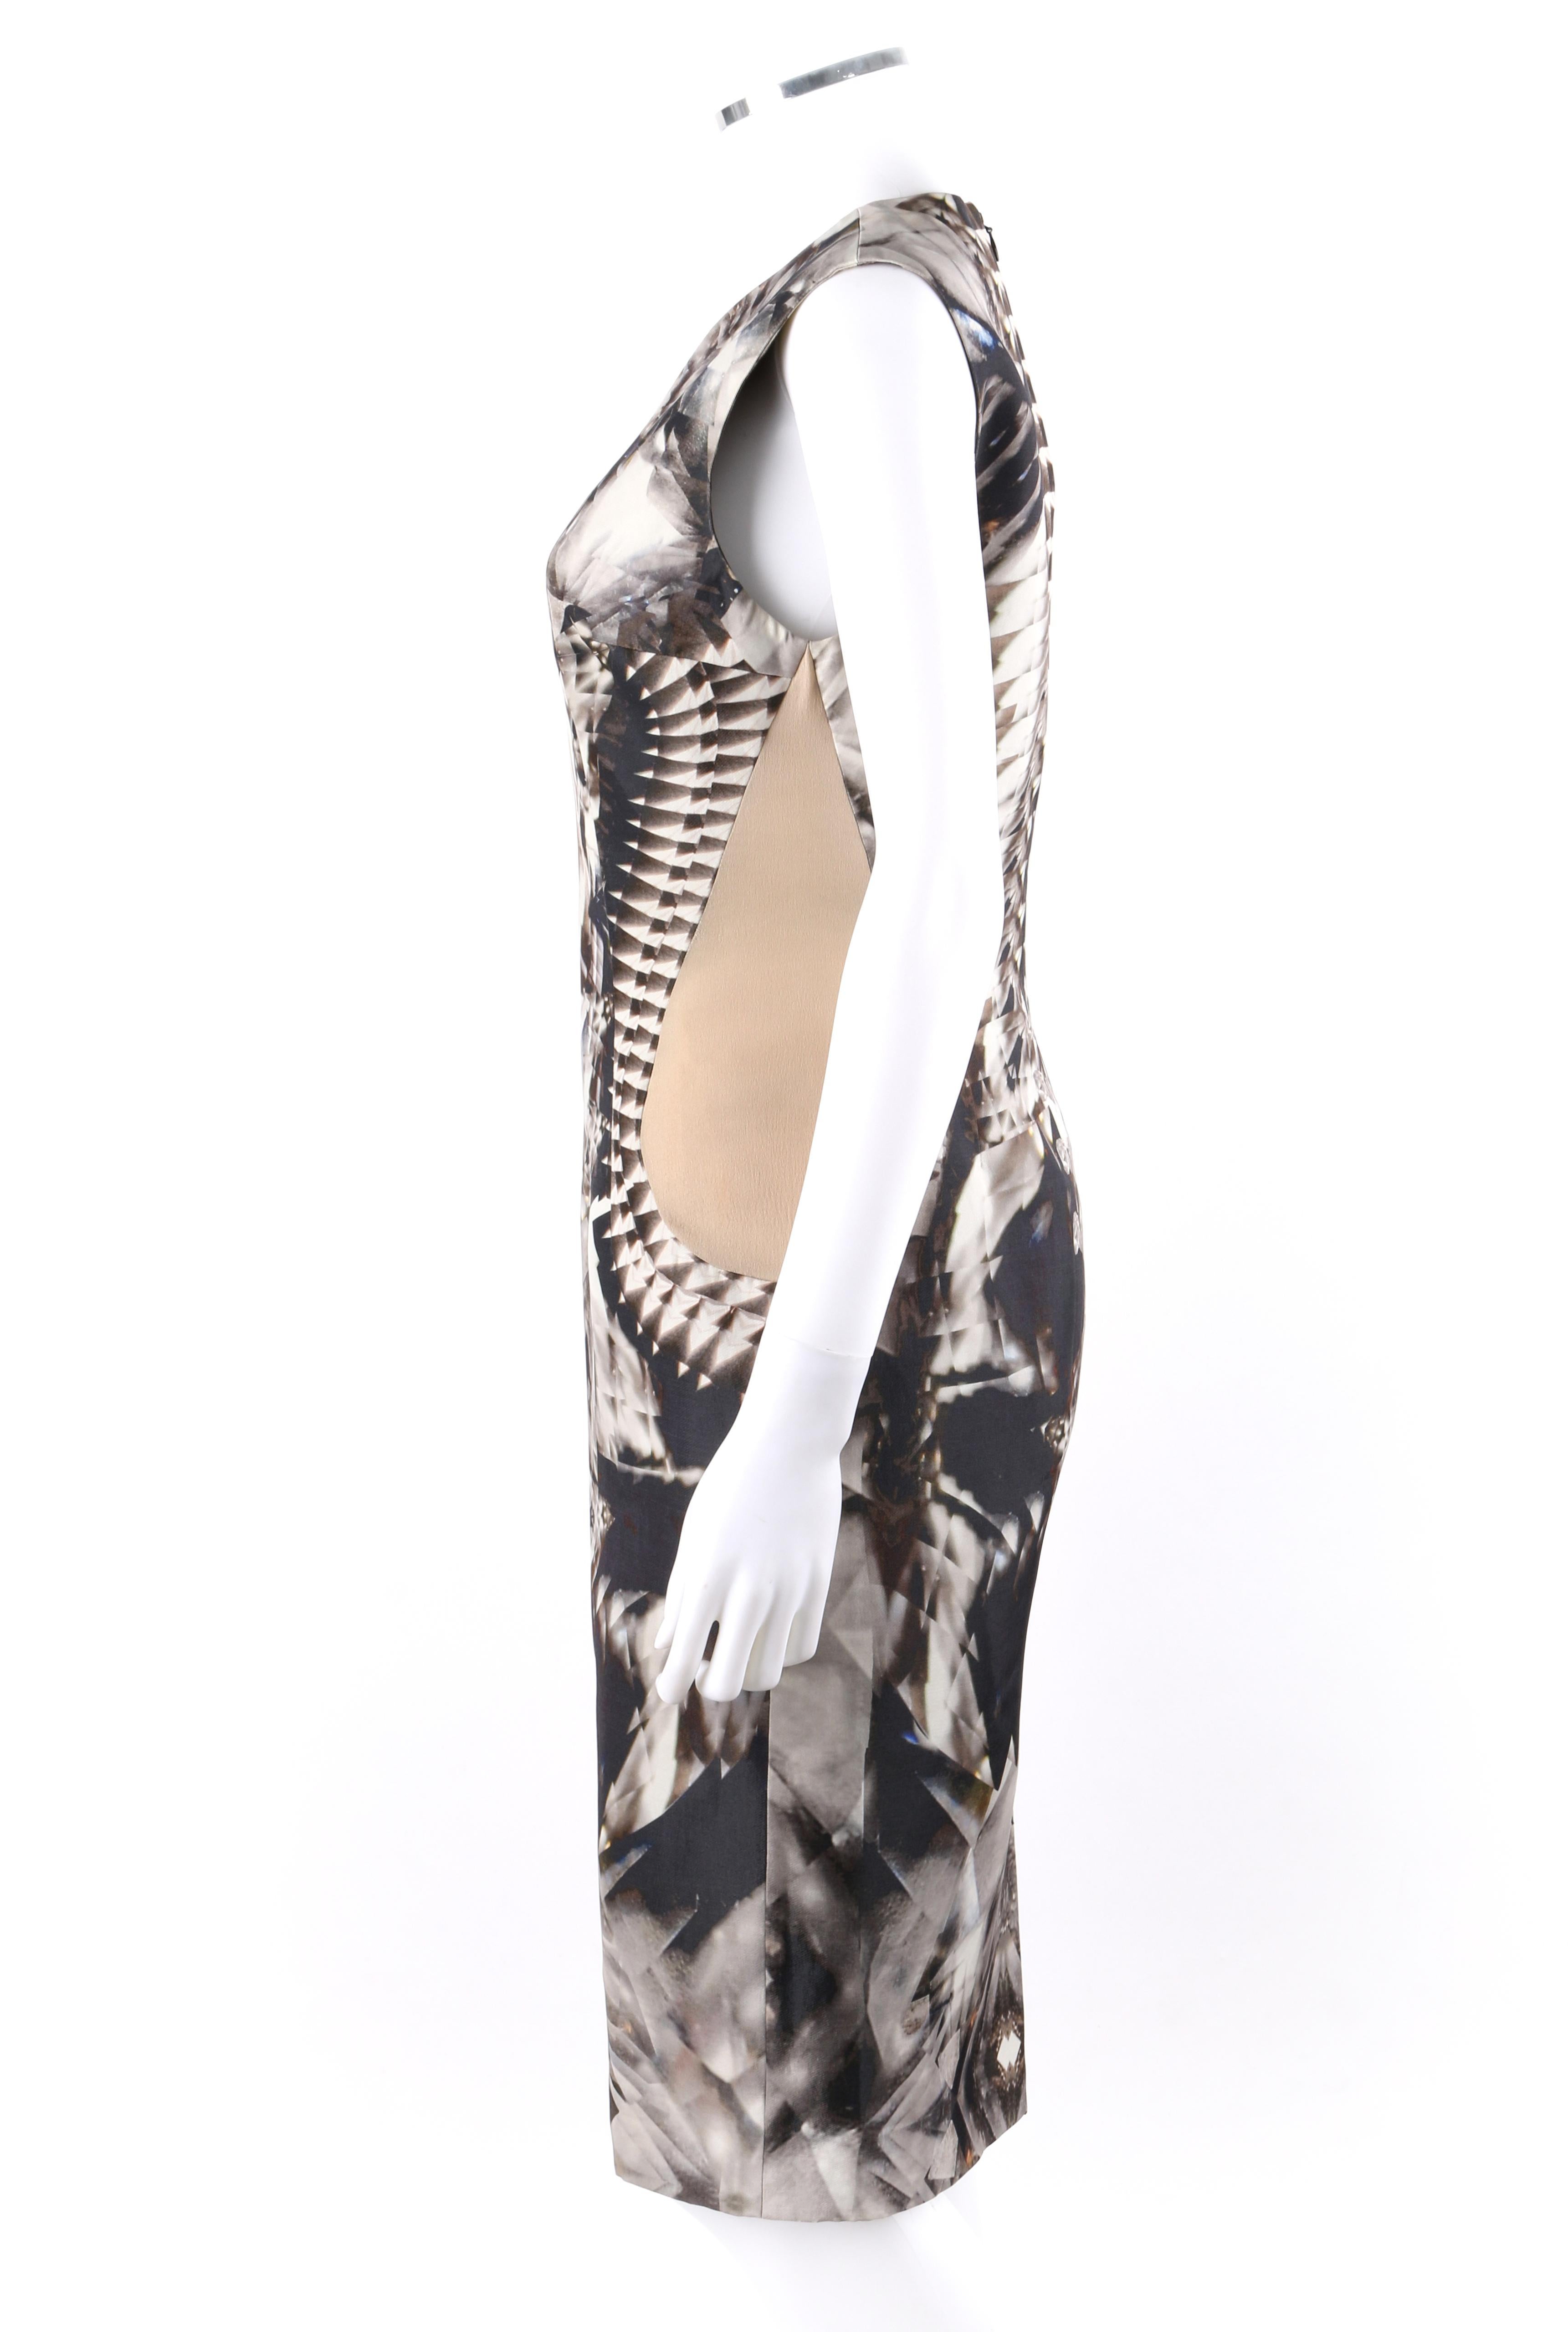 Gray ALEXANDER McQUEEN S/S 2009 Iconic Runway Skeleton Kaleidoscope Print Dress 44  For Sale